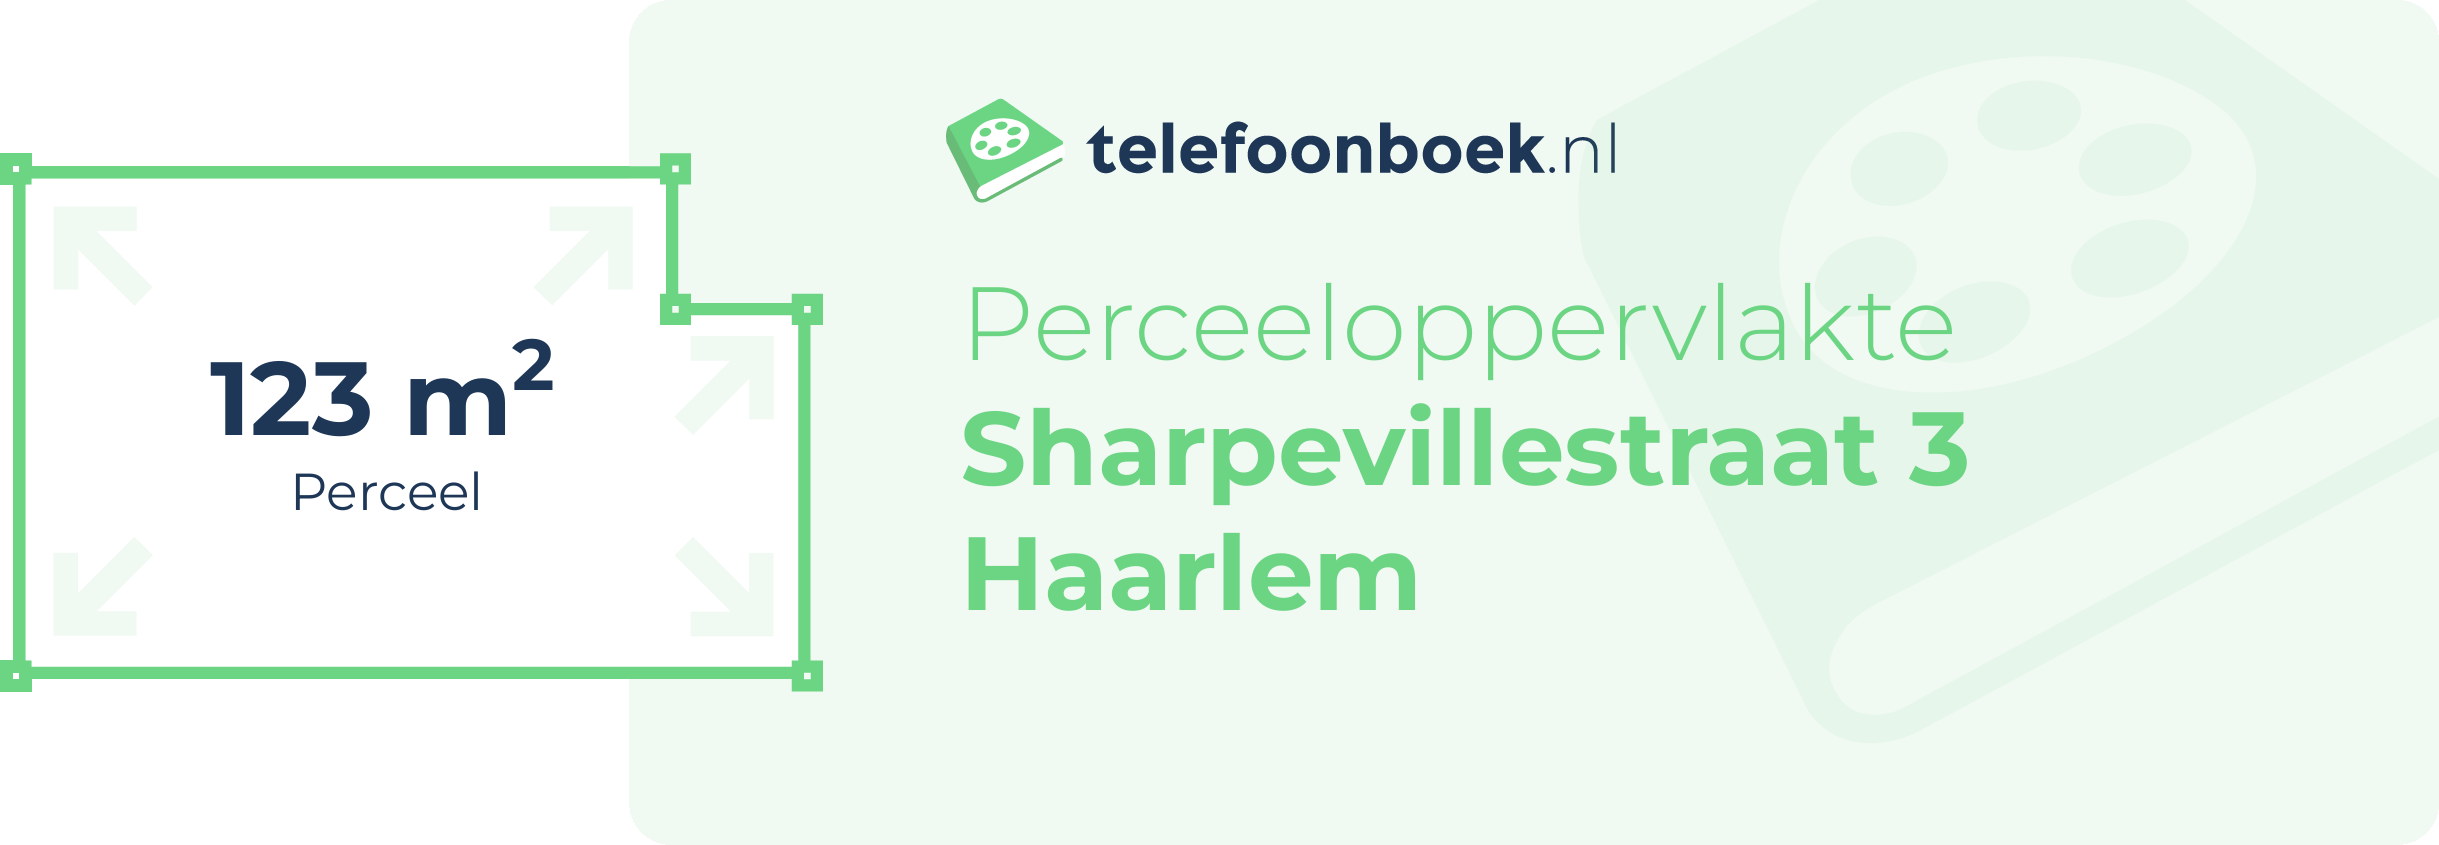 Perceeloppervlakte Sharpevillestraat 3 Haarlem